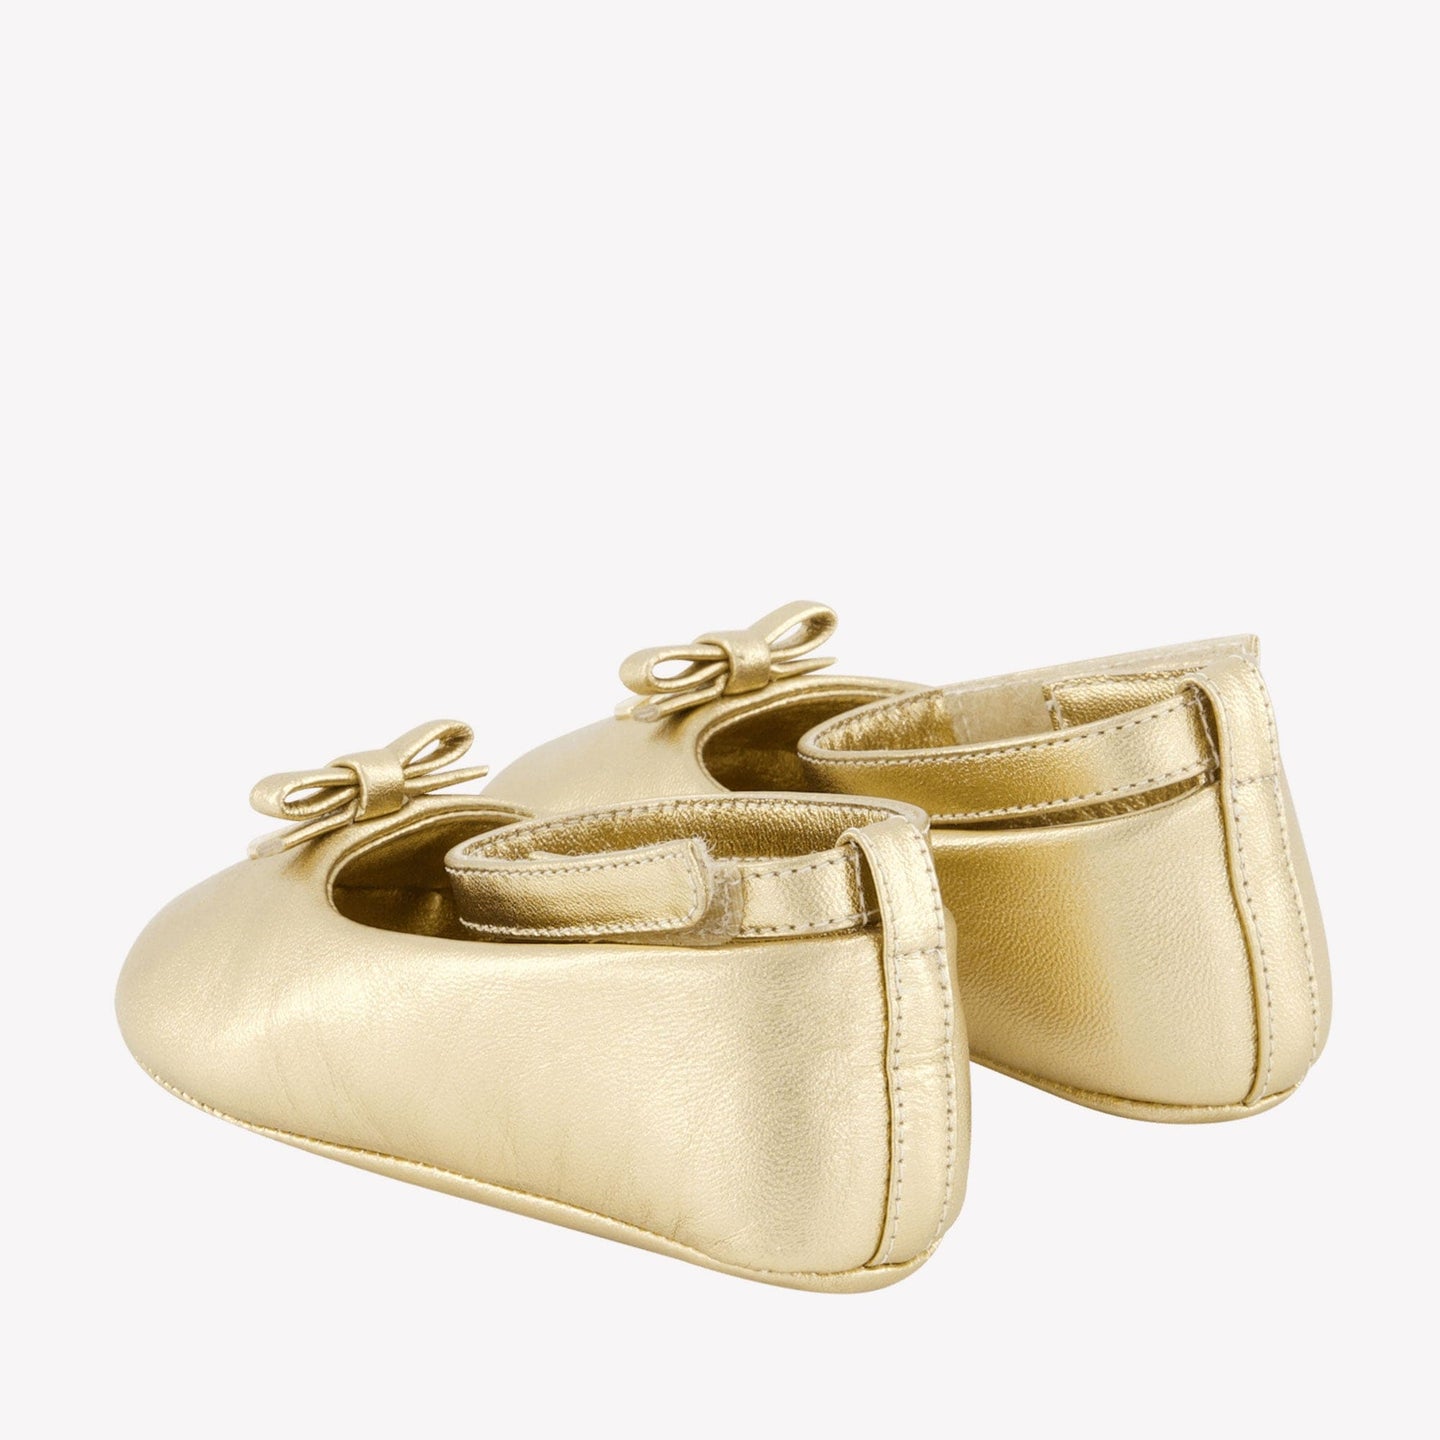 Dolce & Gabbana Baby Meisjes Schoenen Goud 16